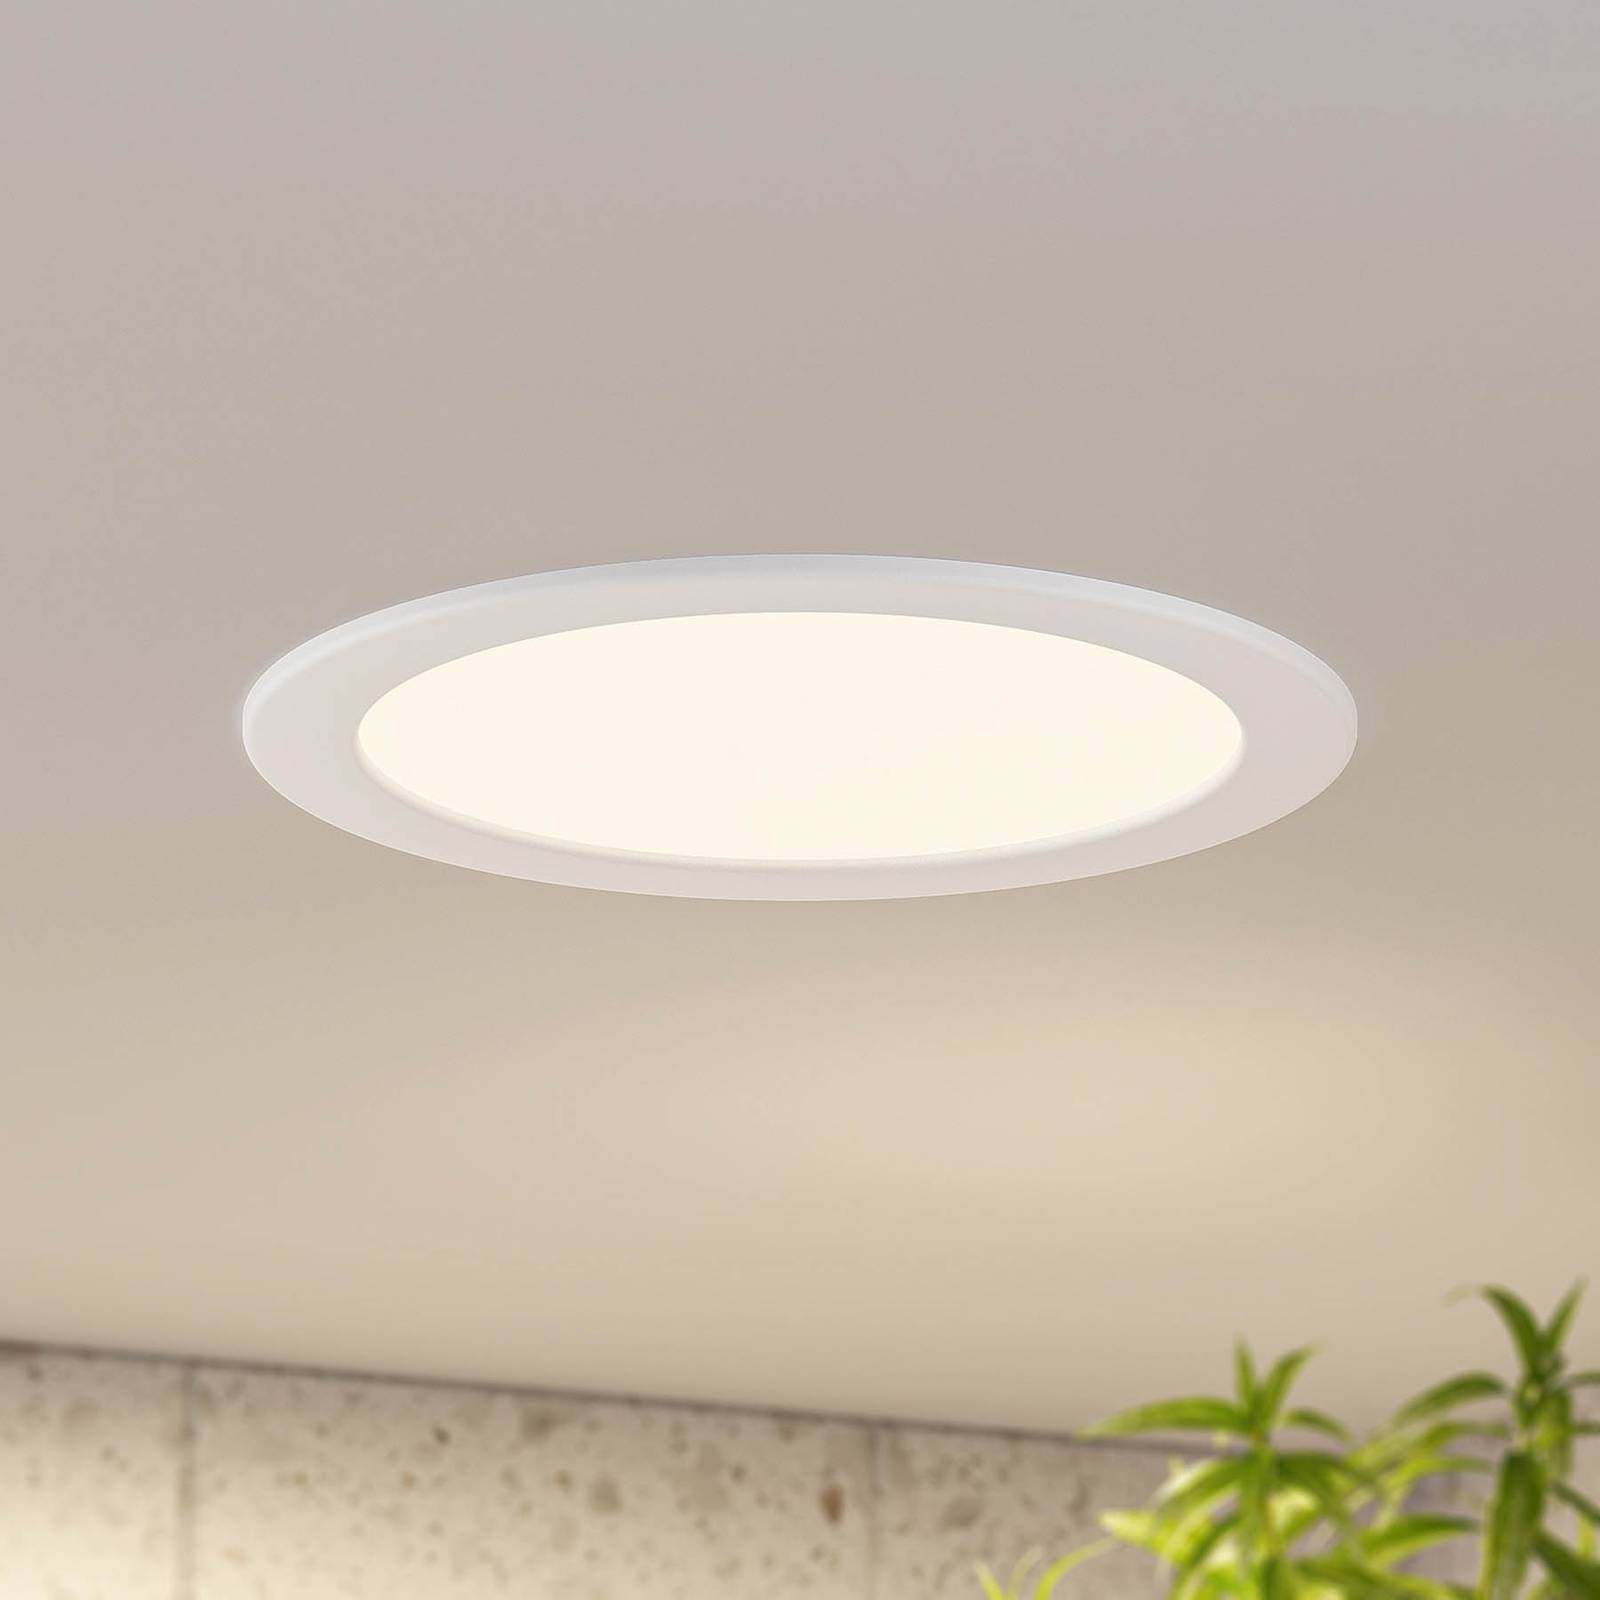 Prios Cadance LED indbygningslampe, hvid, 24 cm